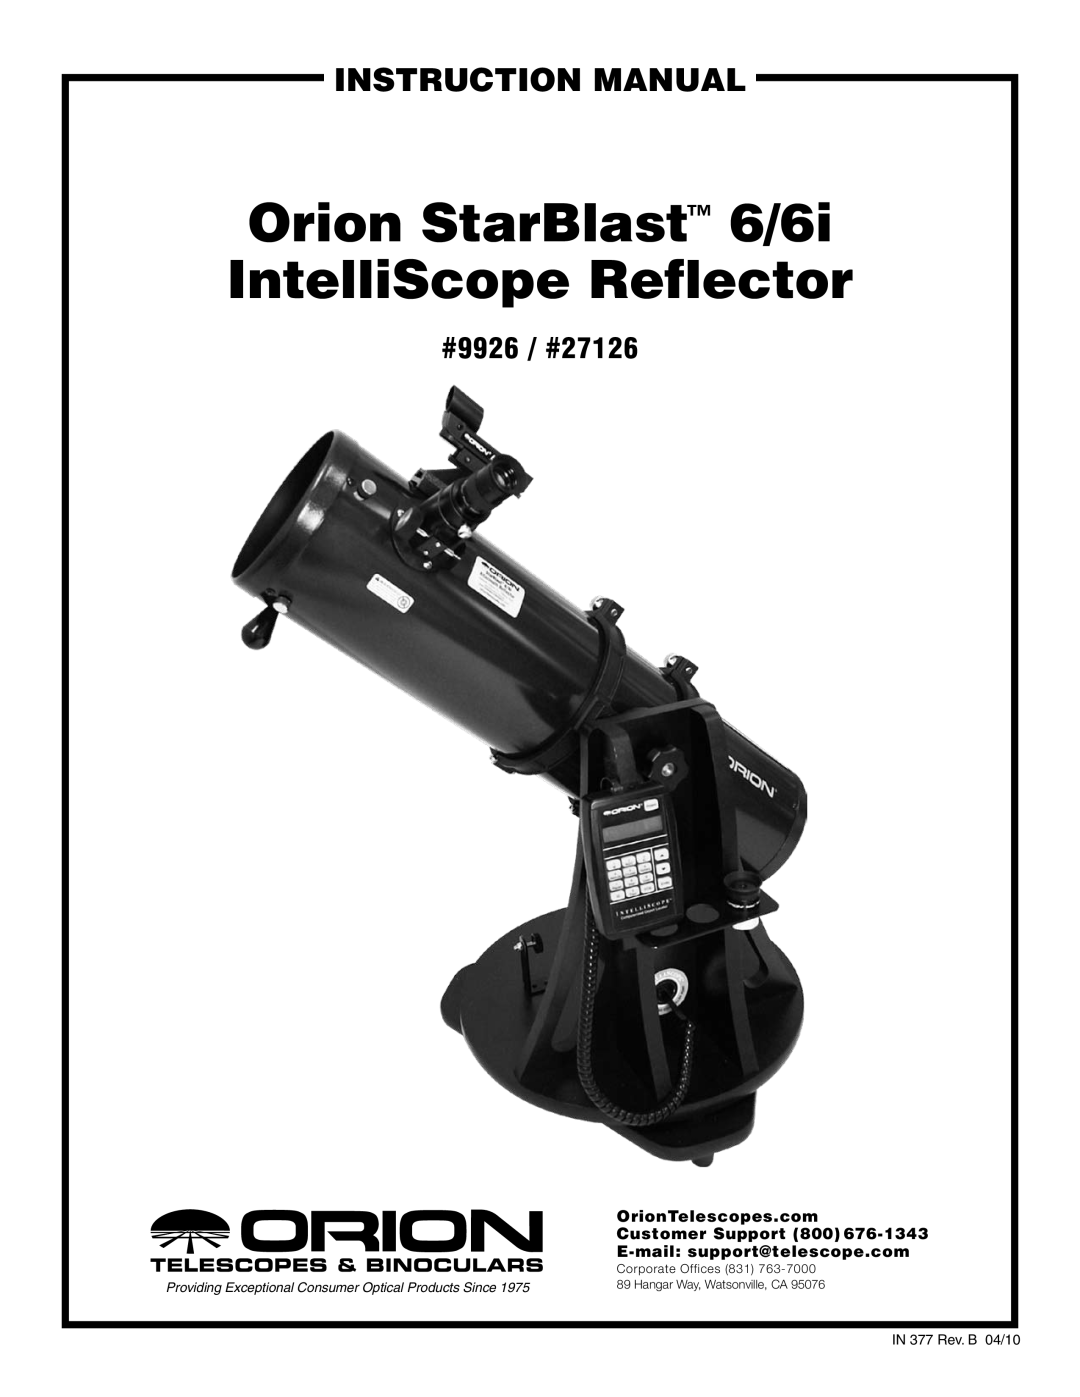 Orion 6/6I instruction manual #9926 / #27126, Orion StarBlast 6/6i IntelliScope Reflector, instruction Manual 